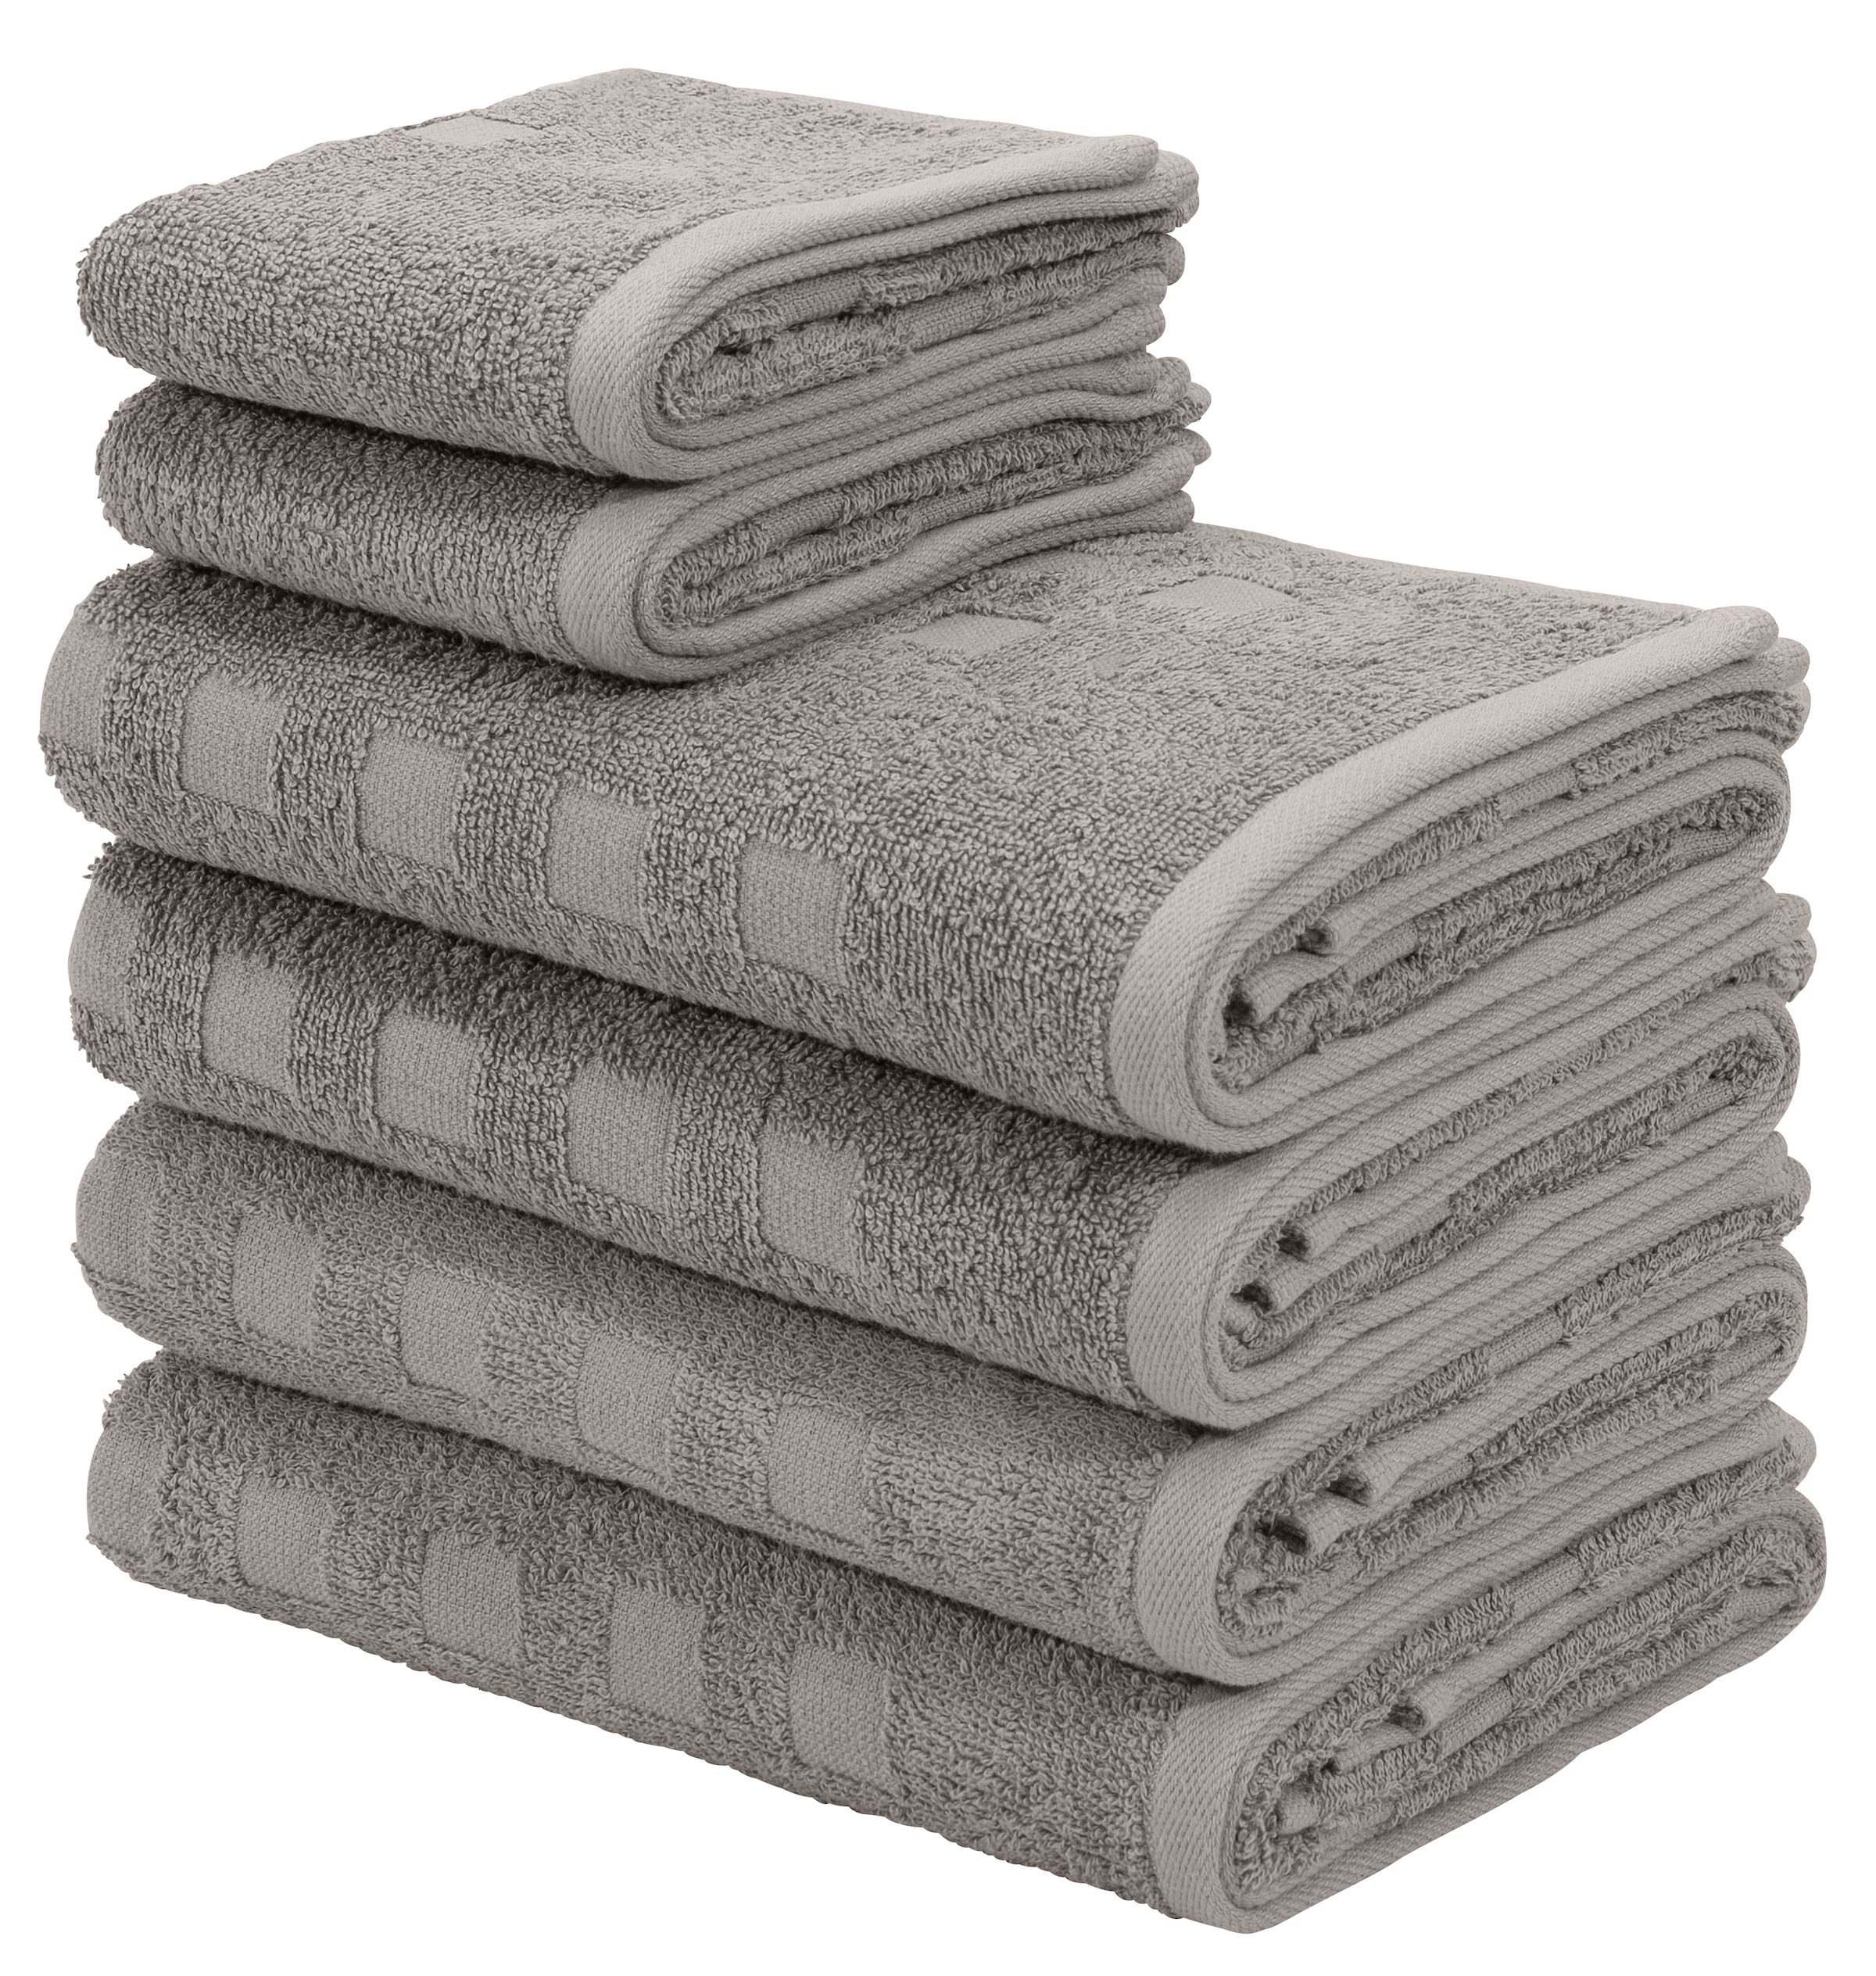 Handtuch-Sets online kaufen Quelle bei liefern – Wir